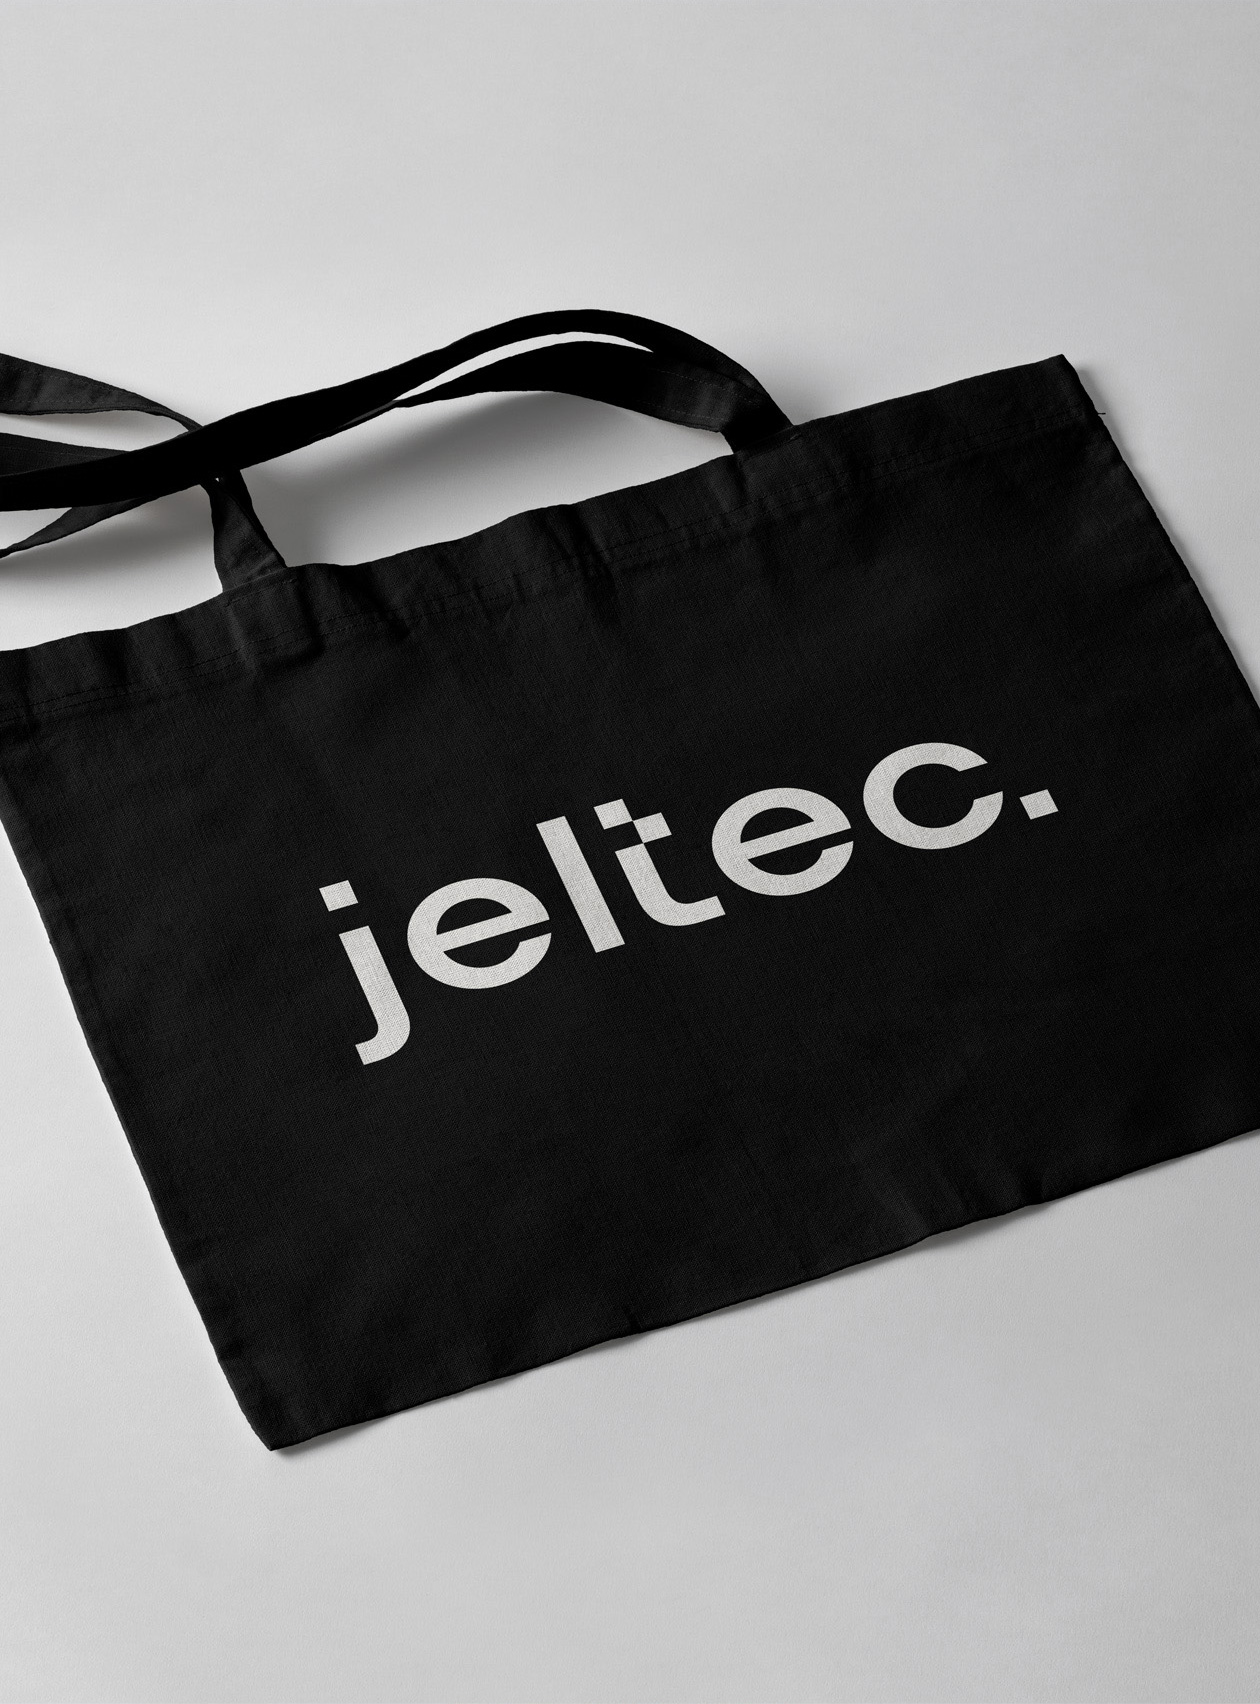 jeltec logo branding